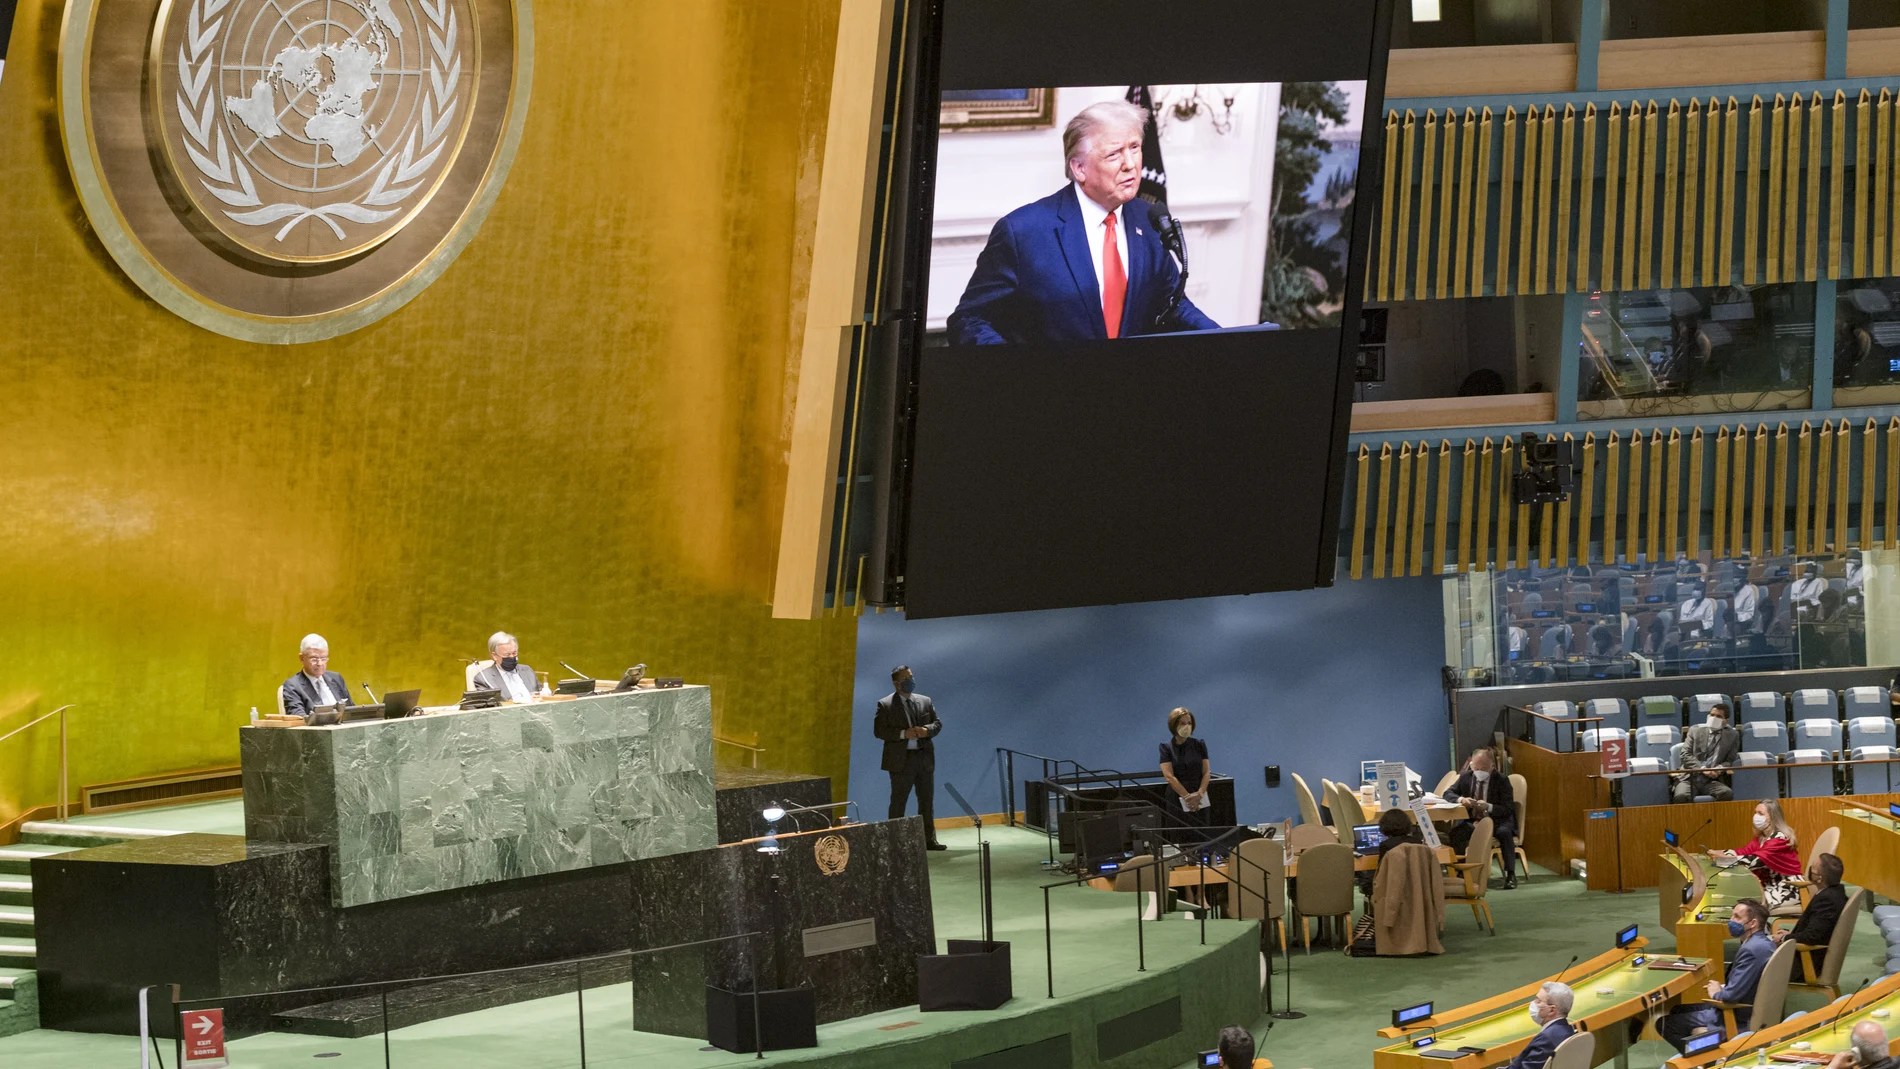 El Presidente Trump durante su intervención en la Asamblea de las Naciones Unidas.